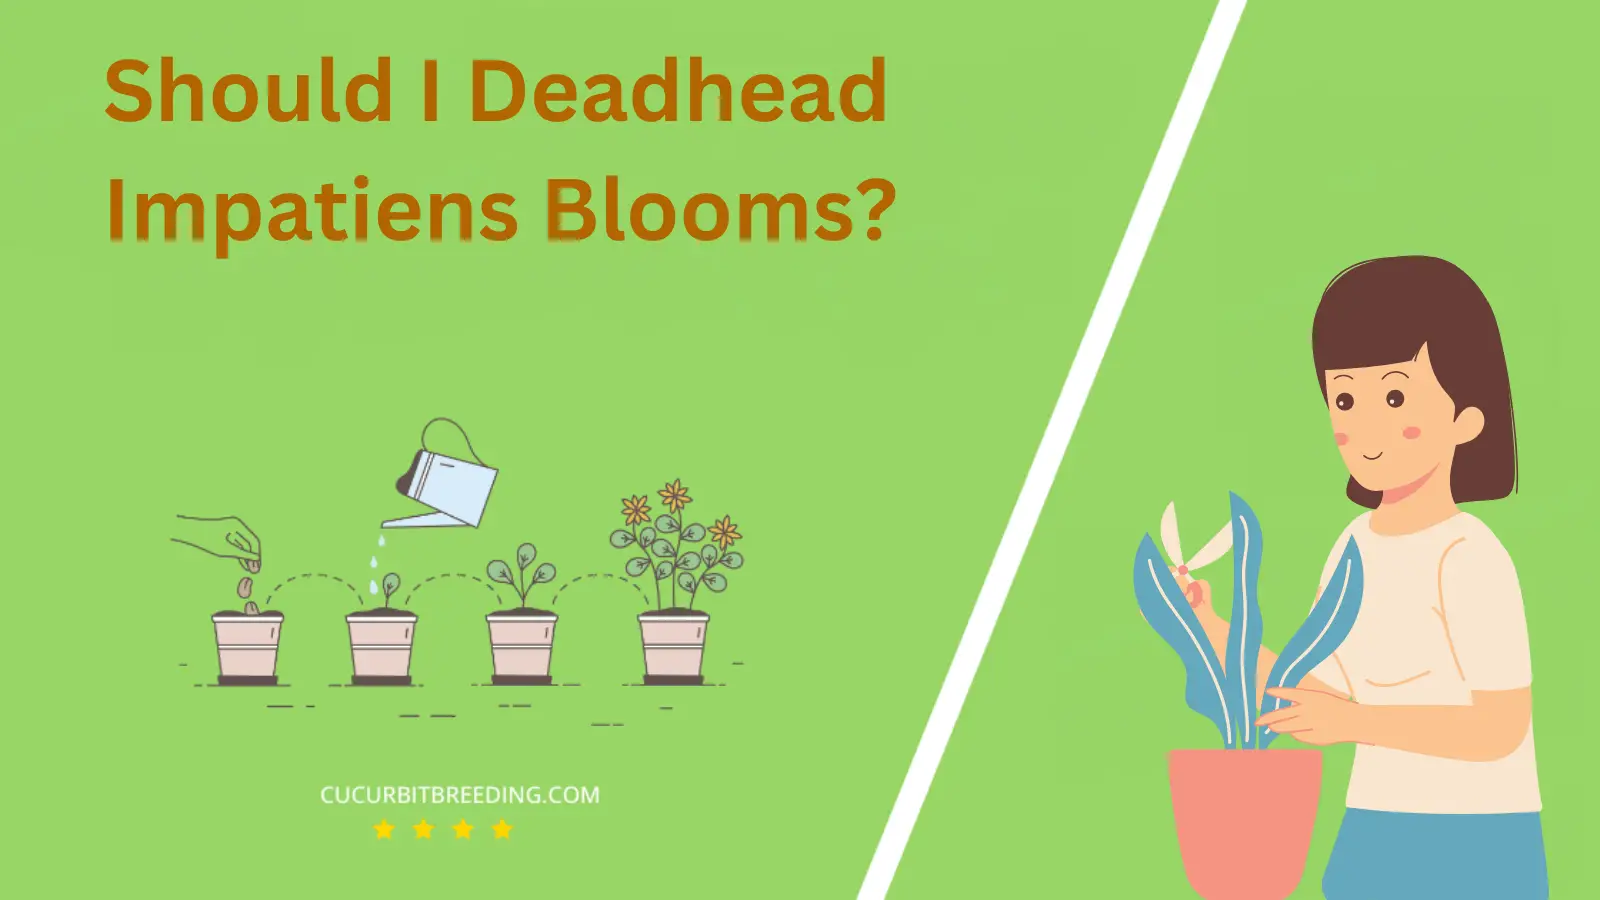 Should I Deadhead Impatiens Blooms?